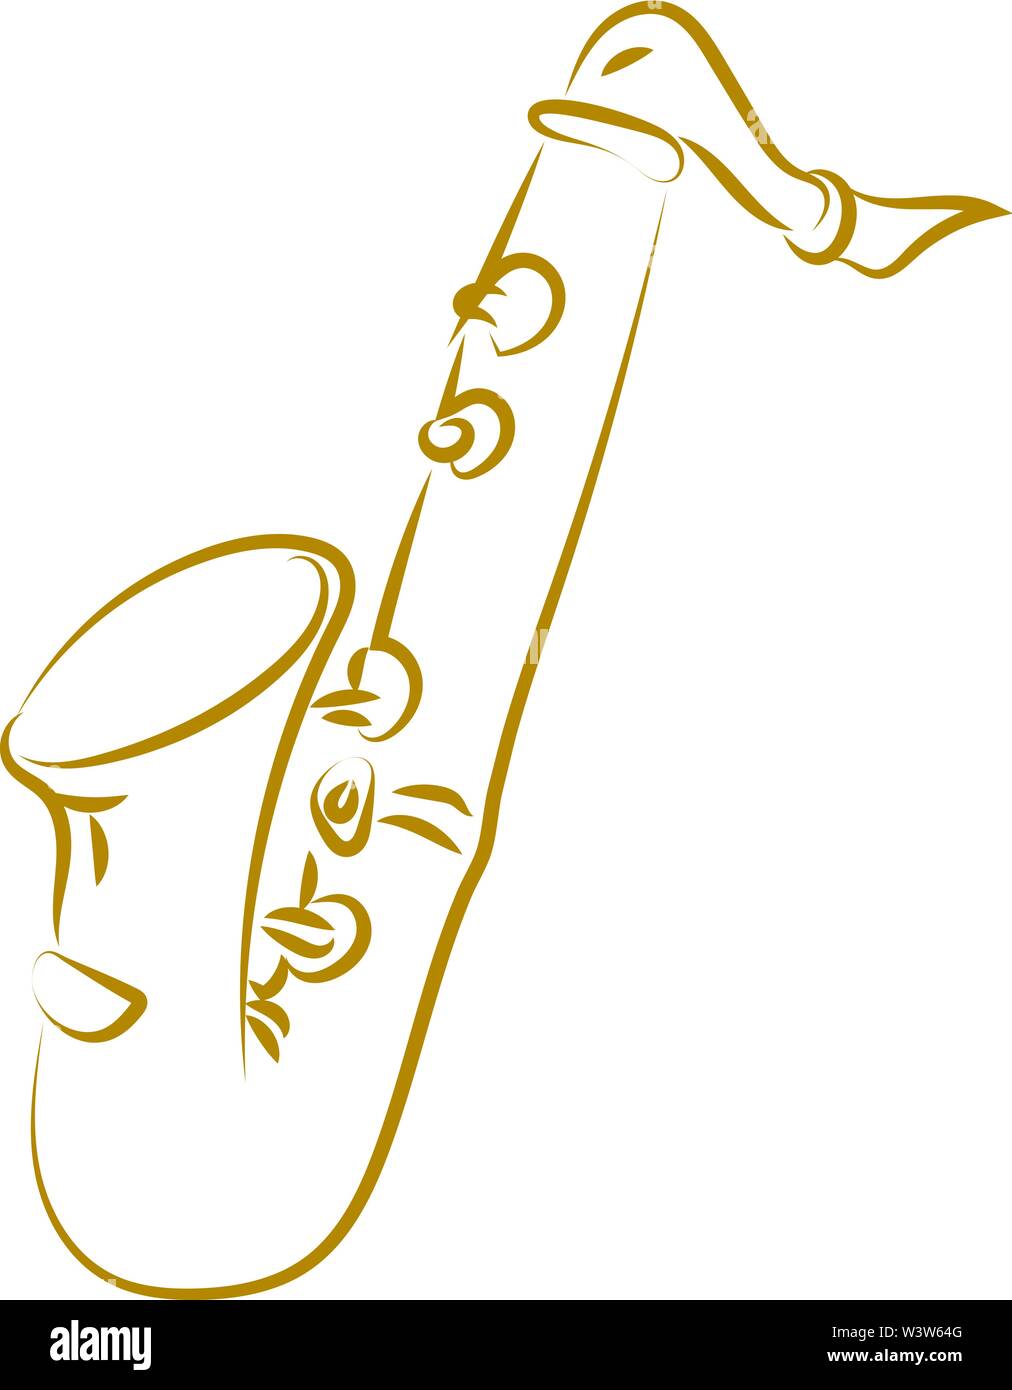 Dessin, illustration, saxophone vecteur sur fond blanc. Illustration de Vecteur